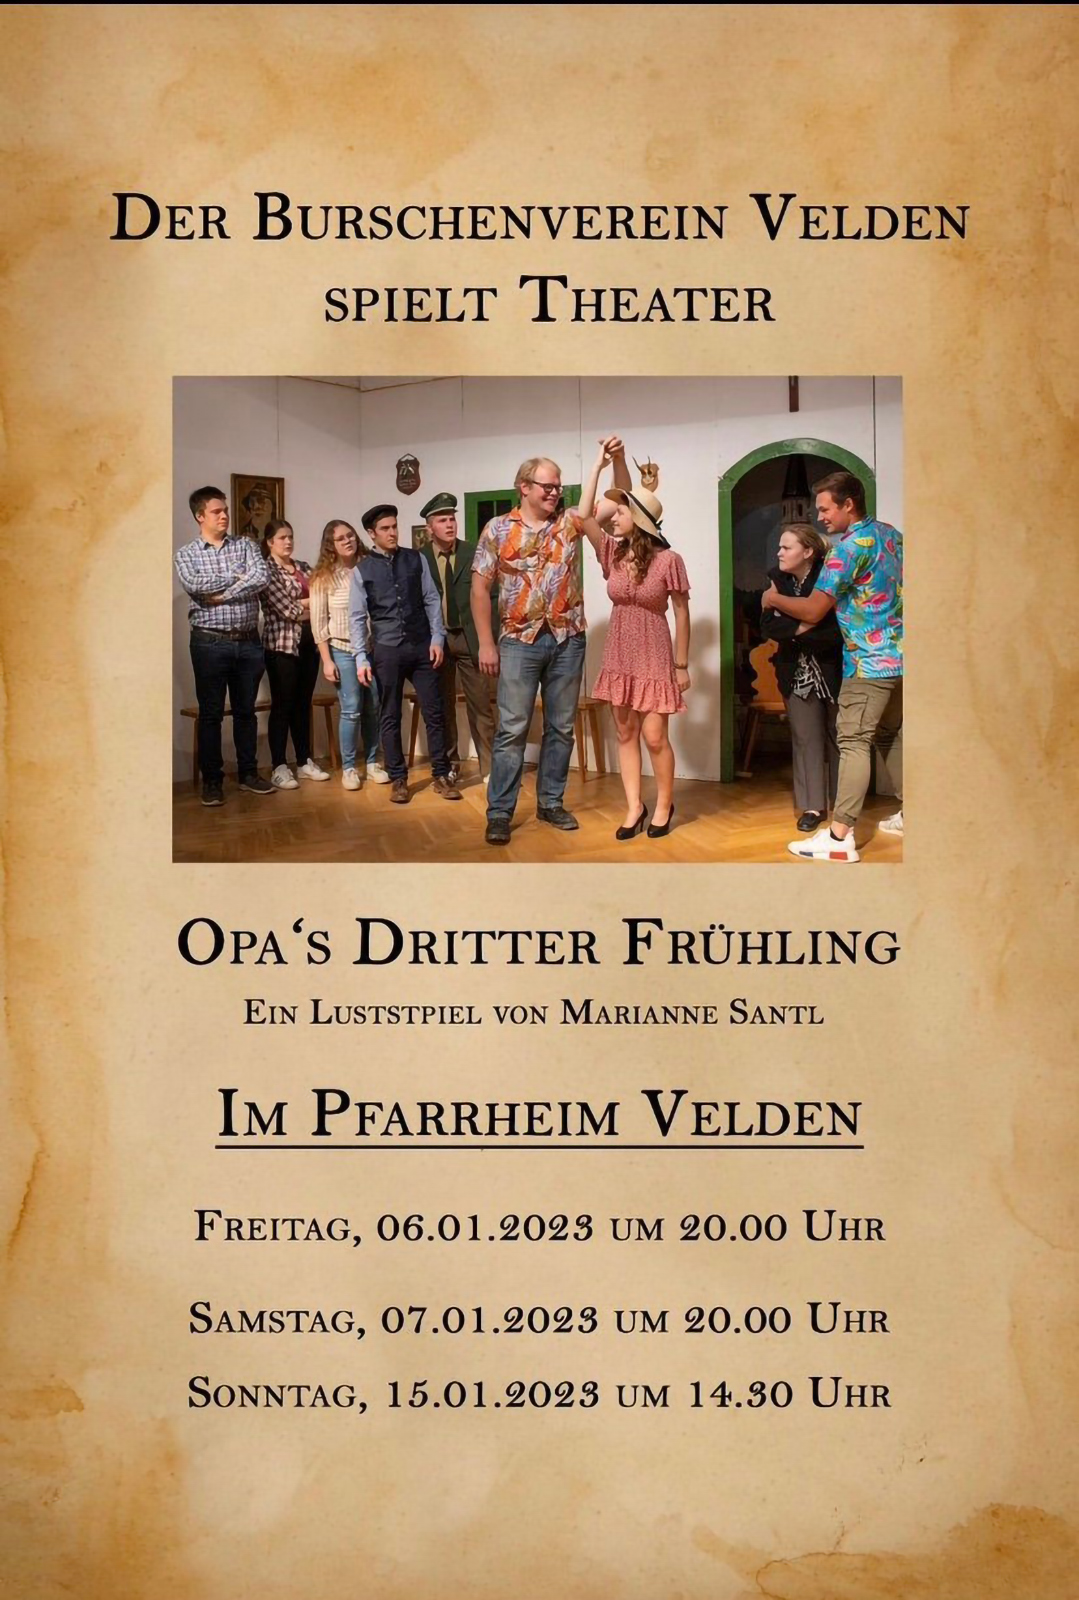 VA-Plakat Theater Burschenverein